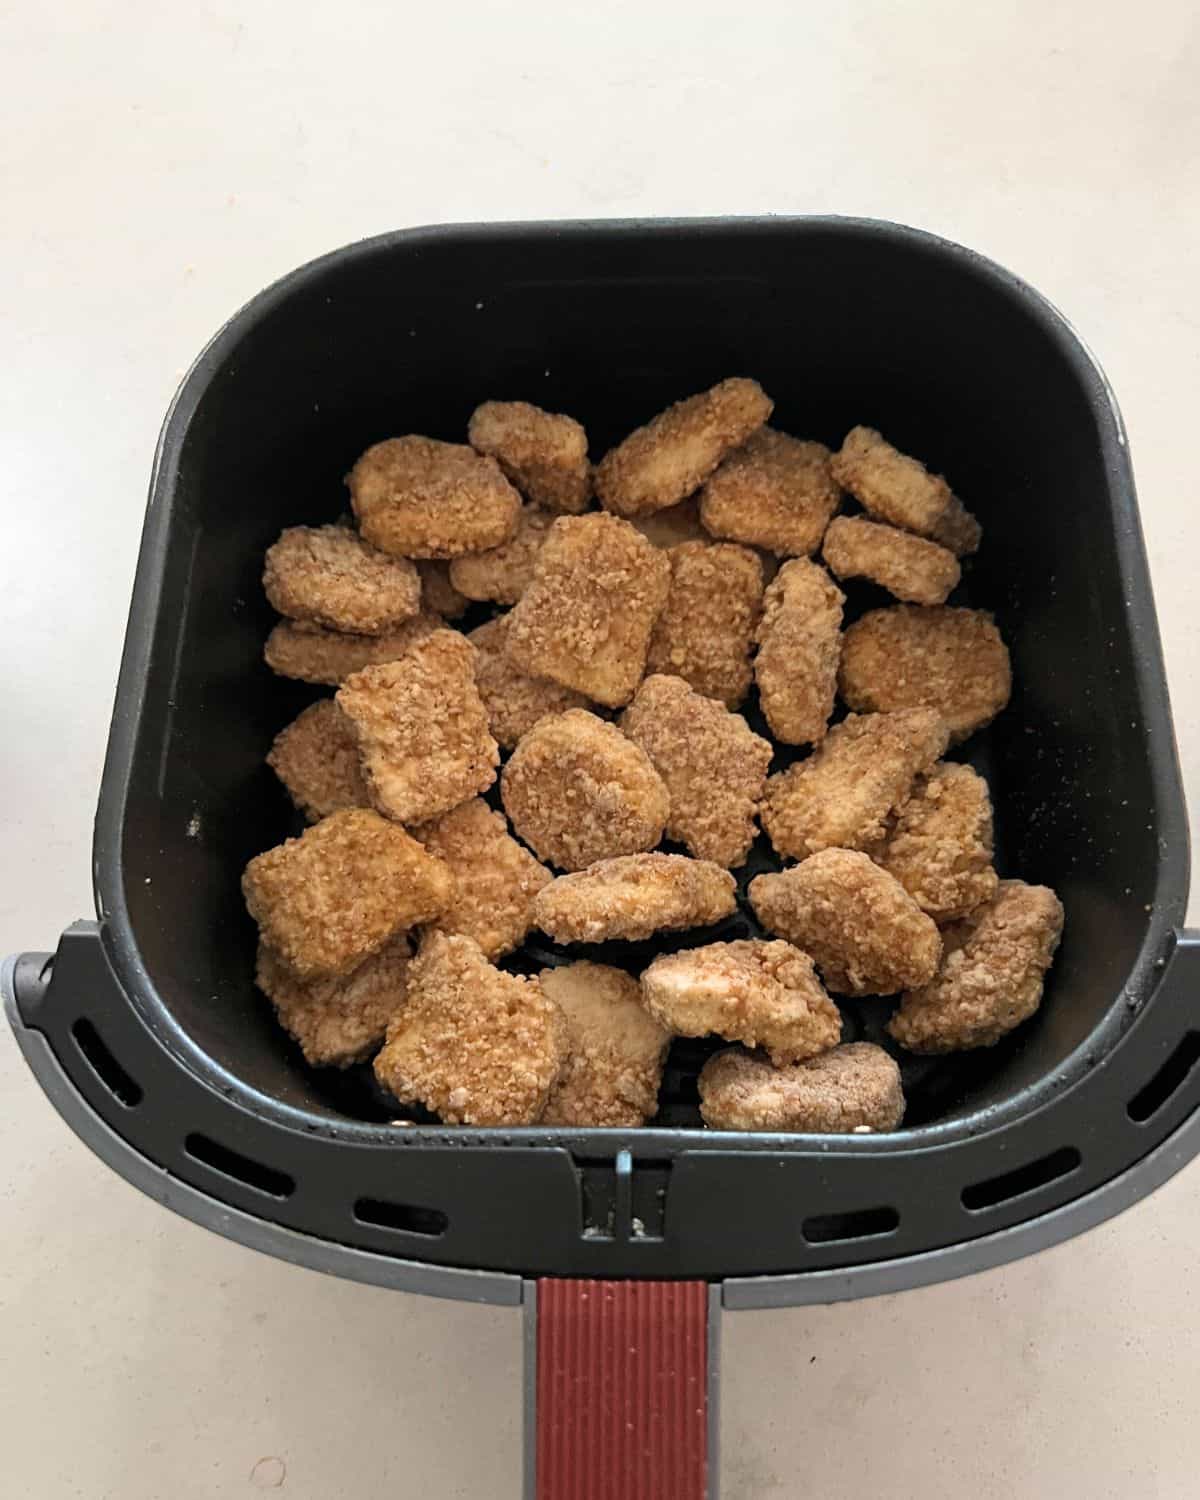 Frozen chicken nuggets in air fryer basket. 